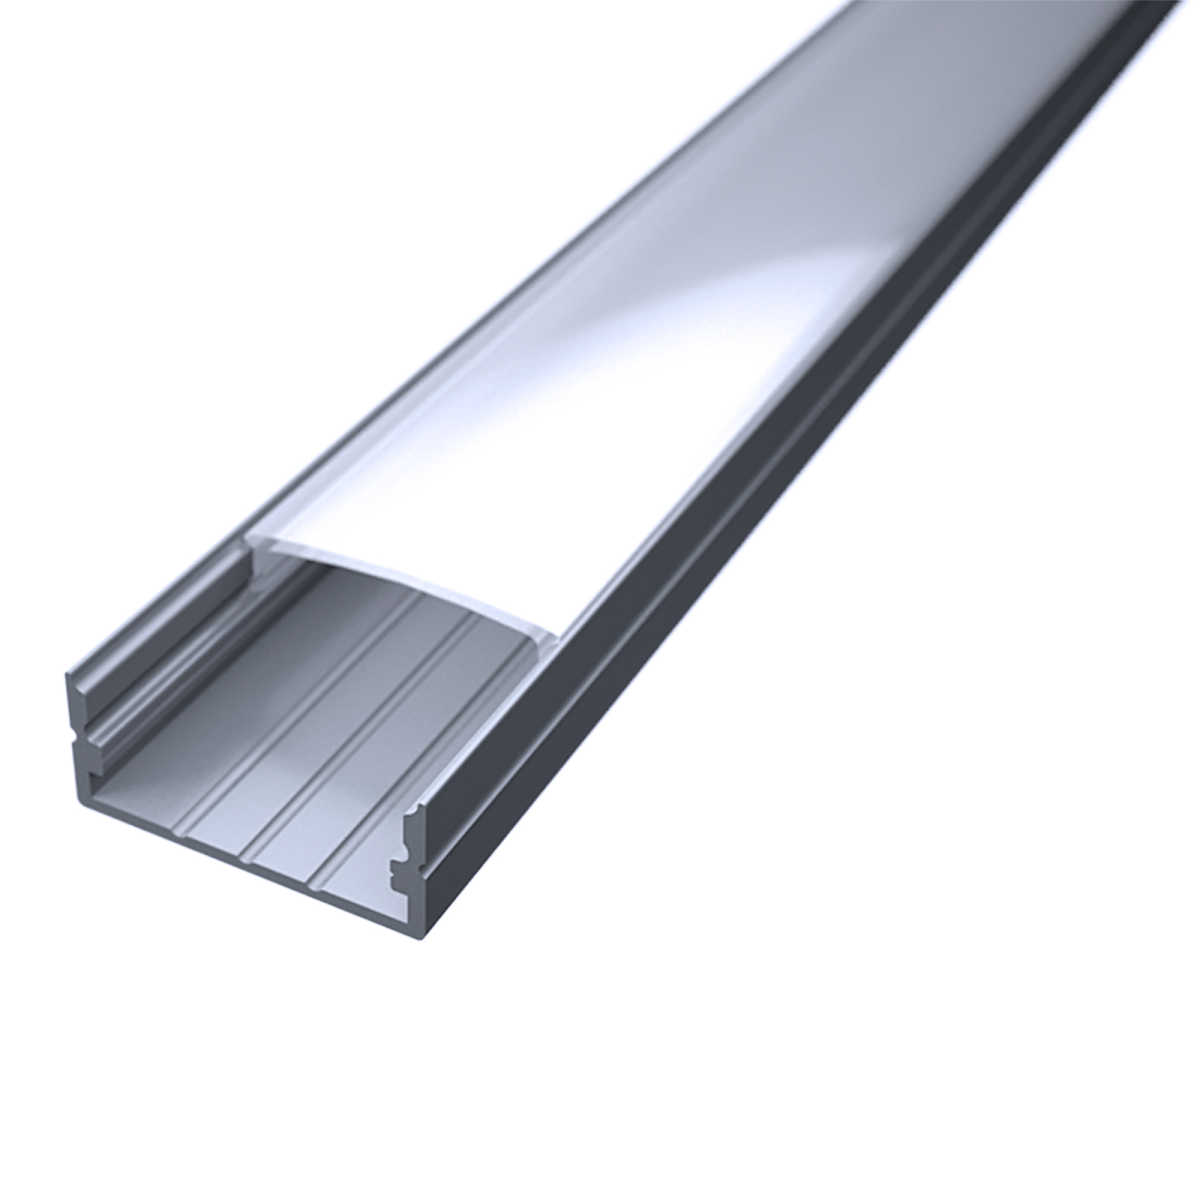 LED Flachprofil "Slim-Line max" | Abdeckung diffus | Zuschnitt auf 75cm |